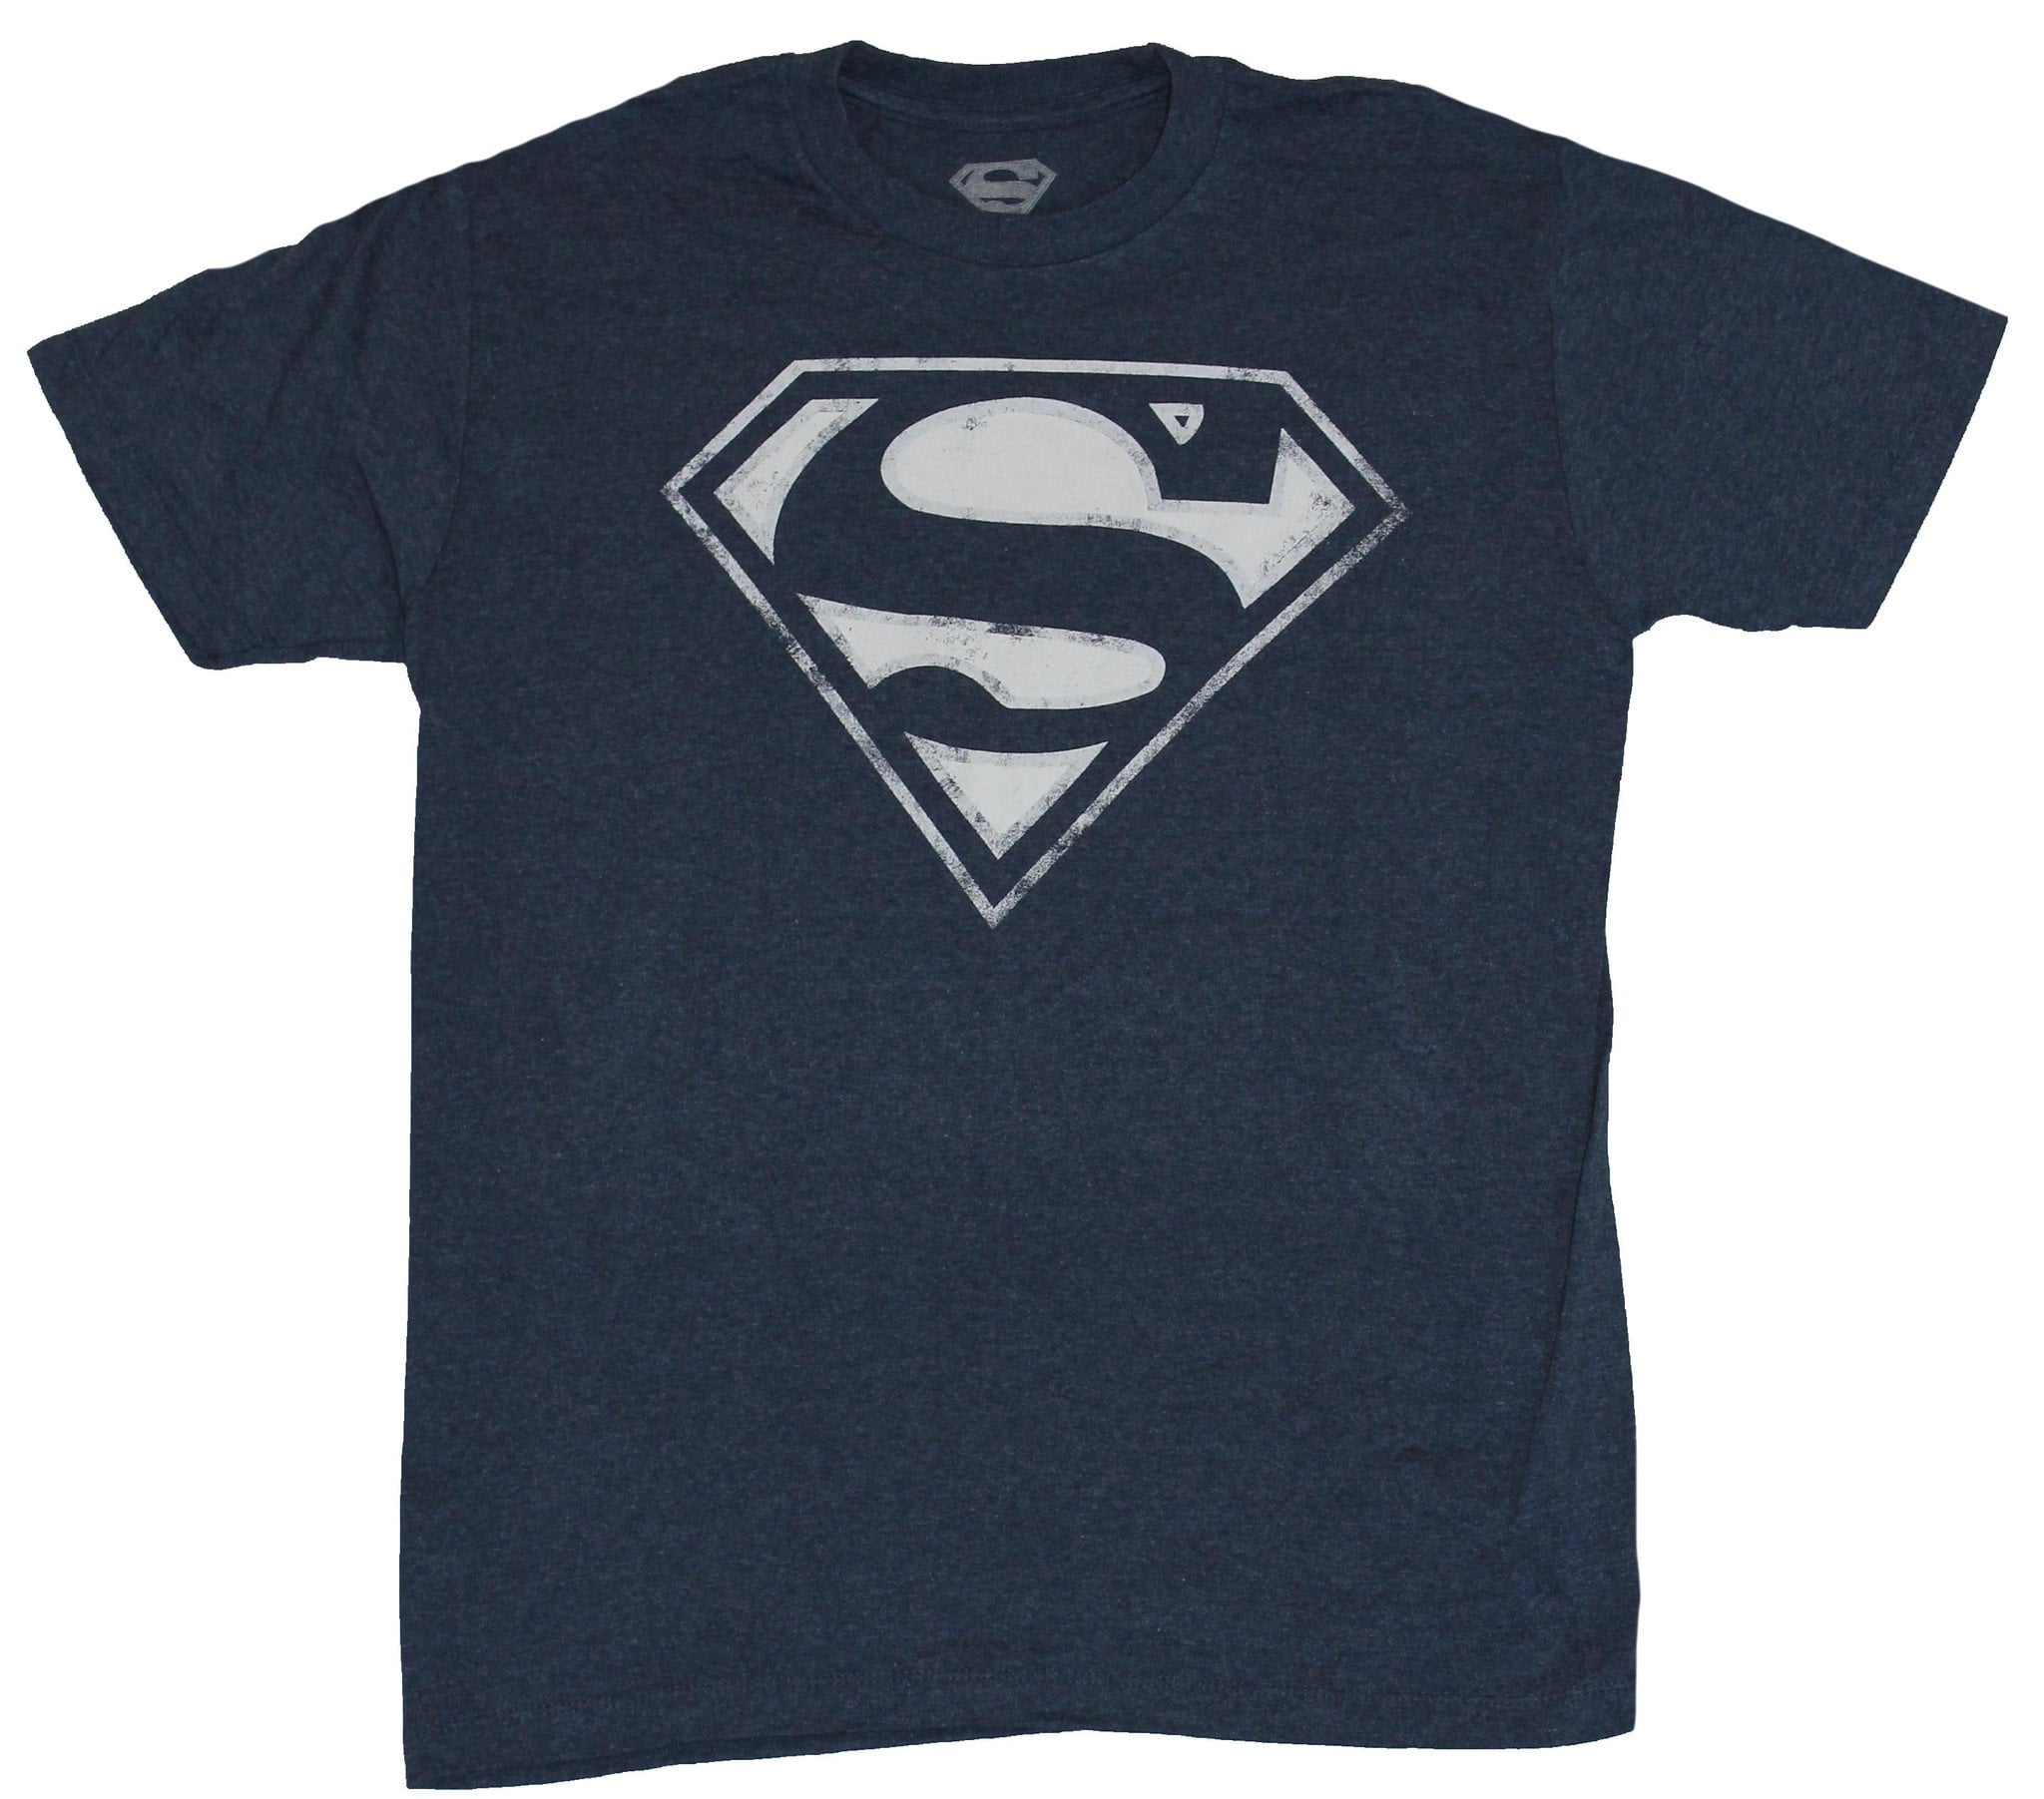 Superman Tshirt Superhero Mens White 100% Cotton T-shirt Top Tee Good Qualityf 